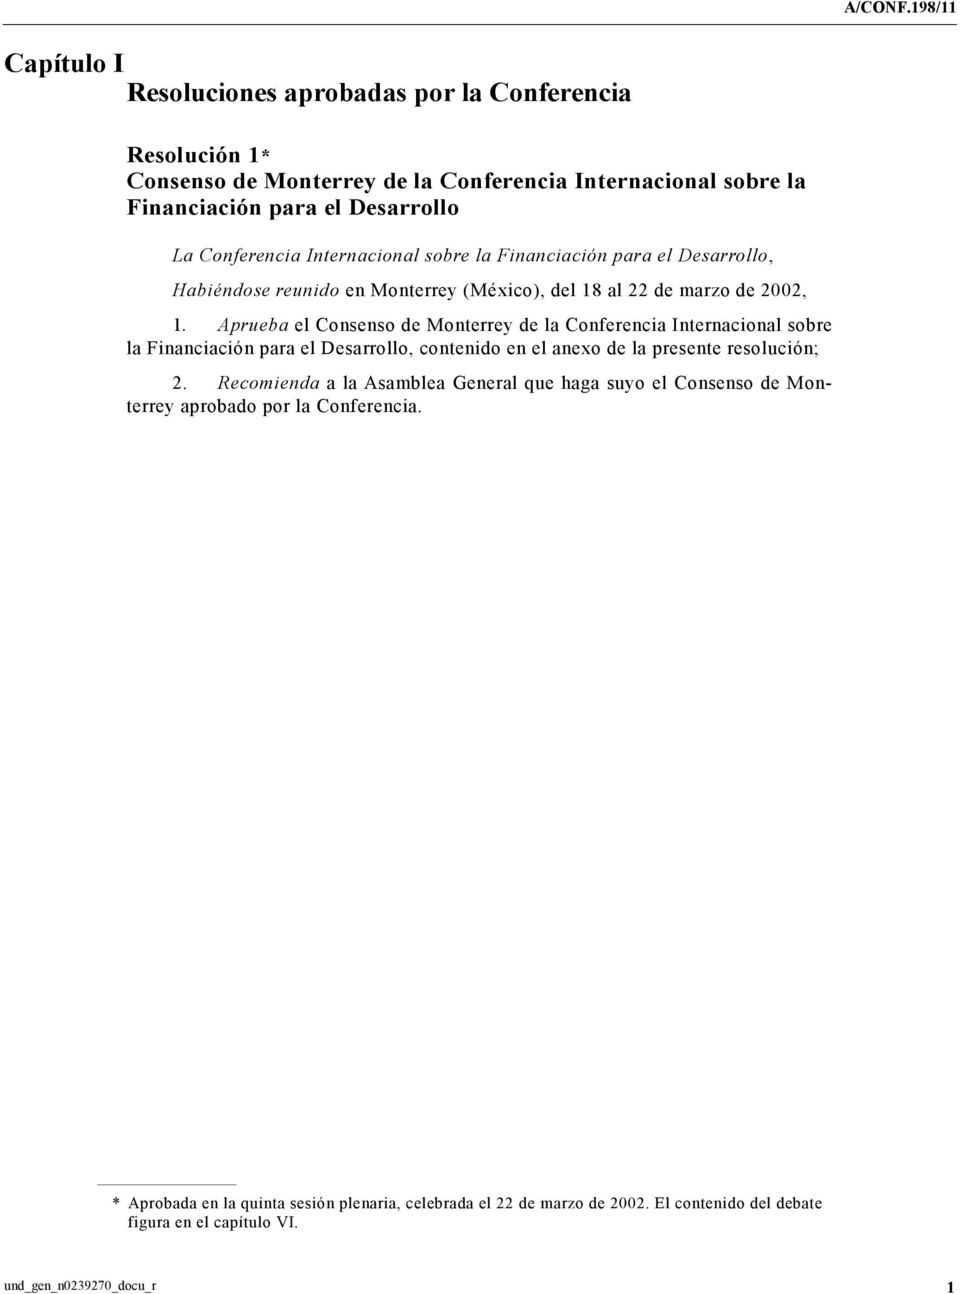 Aprueba el Consenso de Monterrey de la Conferencia Internacional sobre la Financiación para el Desarrollo, contenido en el anexo de la presente resolución; 2.